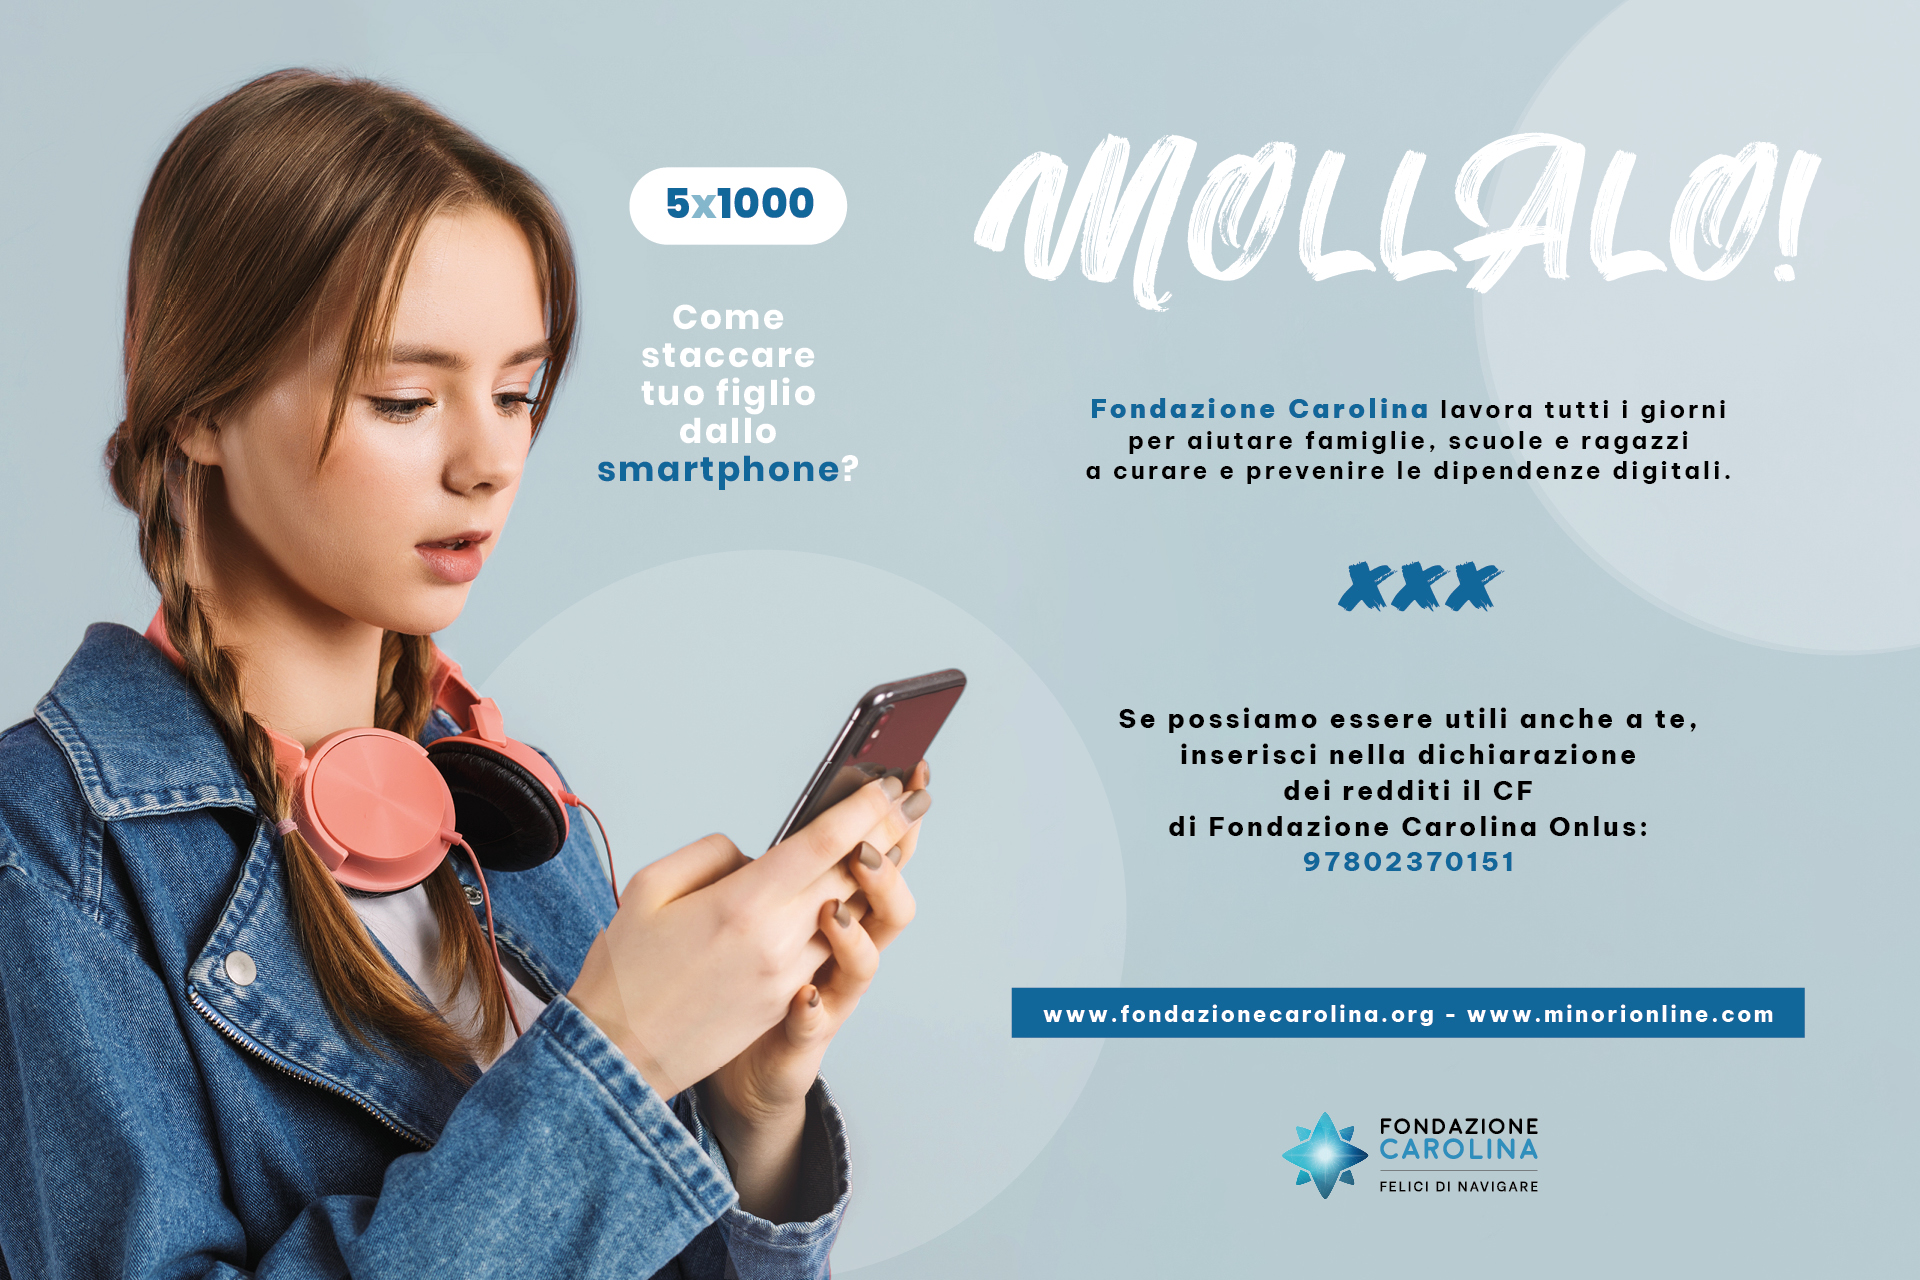 Mollalo! La campagna 5x1000 di Fondazione Carolina per superare la dipendenza da web